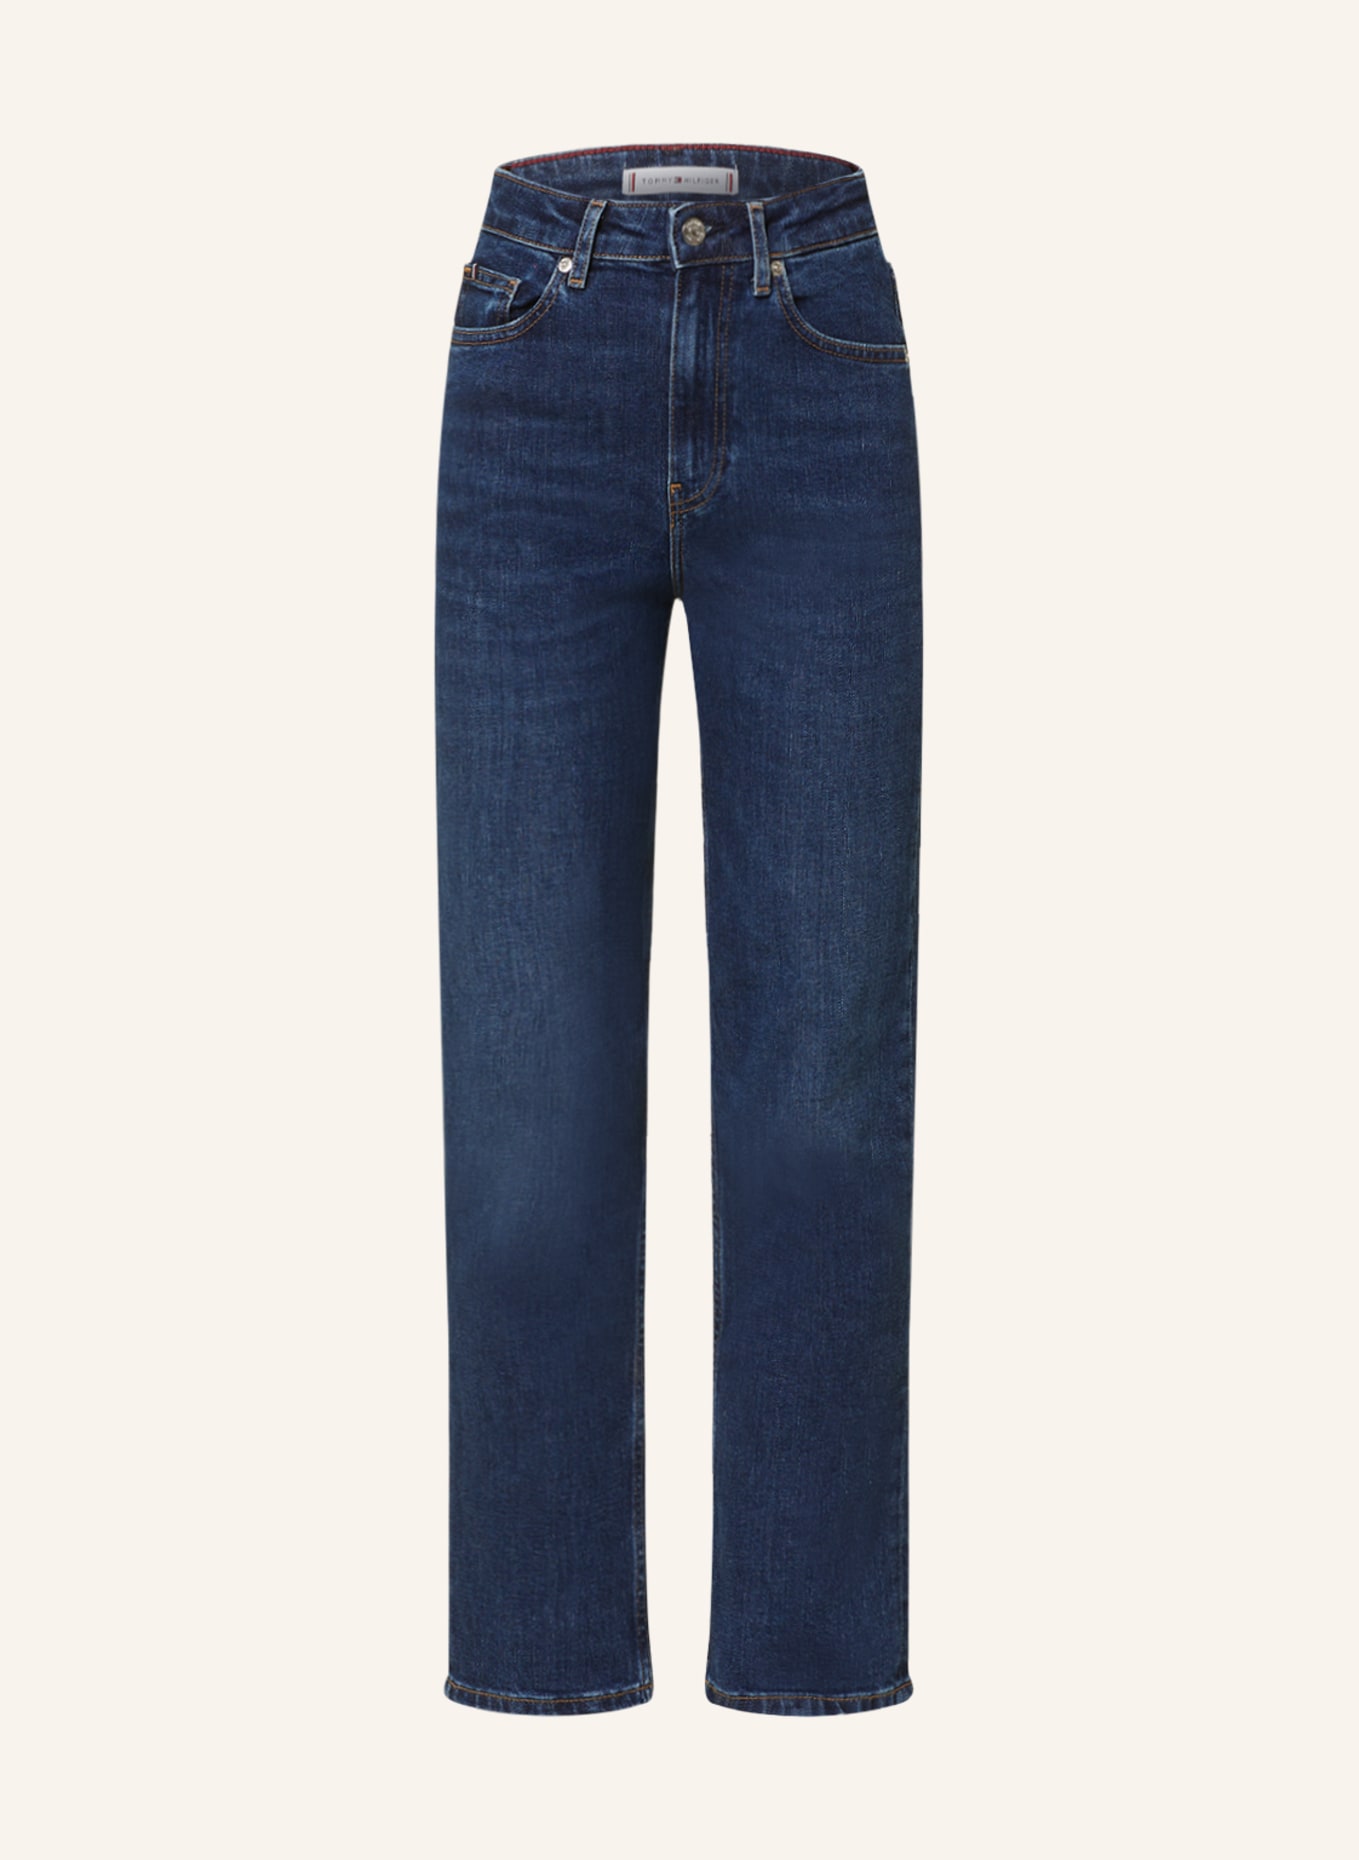 TOMMY HILFIGER Jeans, Farbe: 1BK Ada (Bild 1)